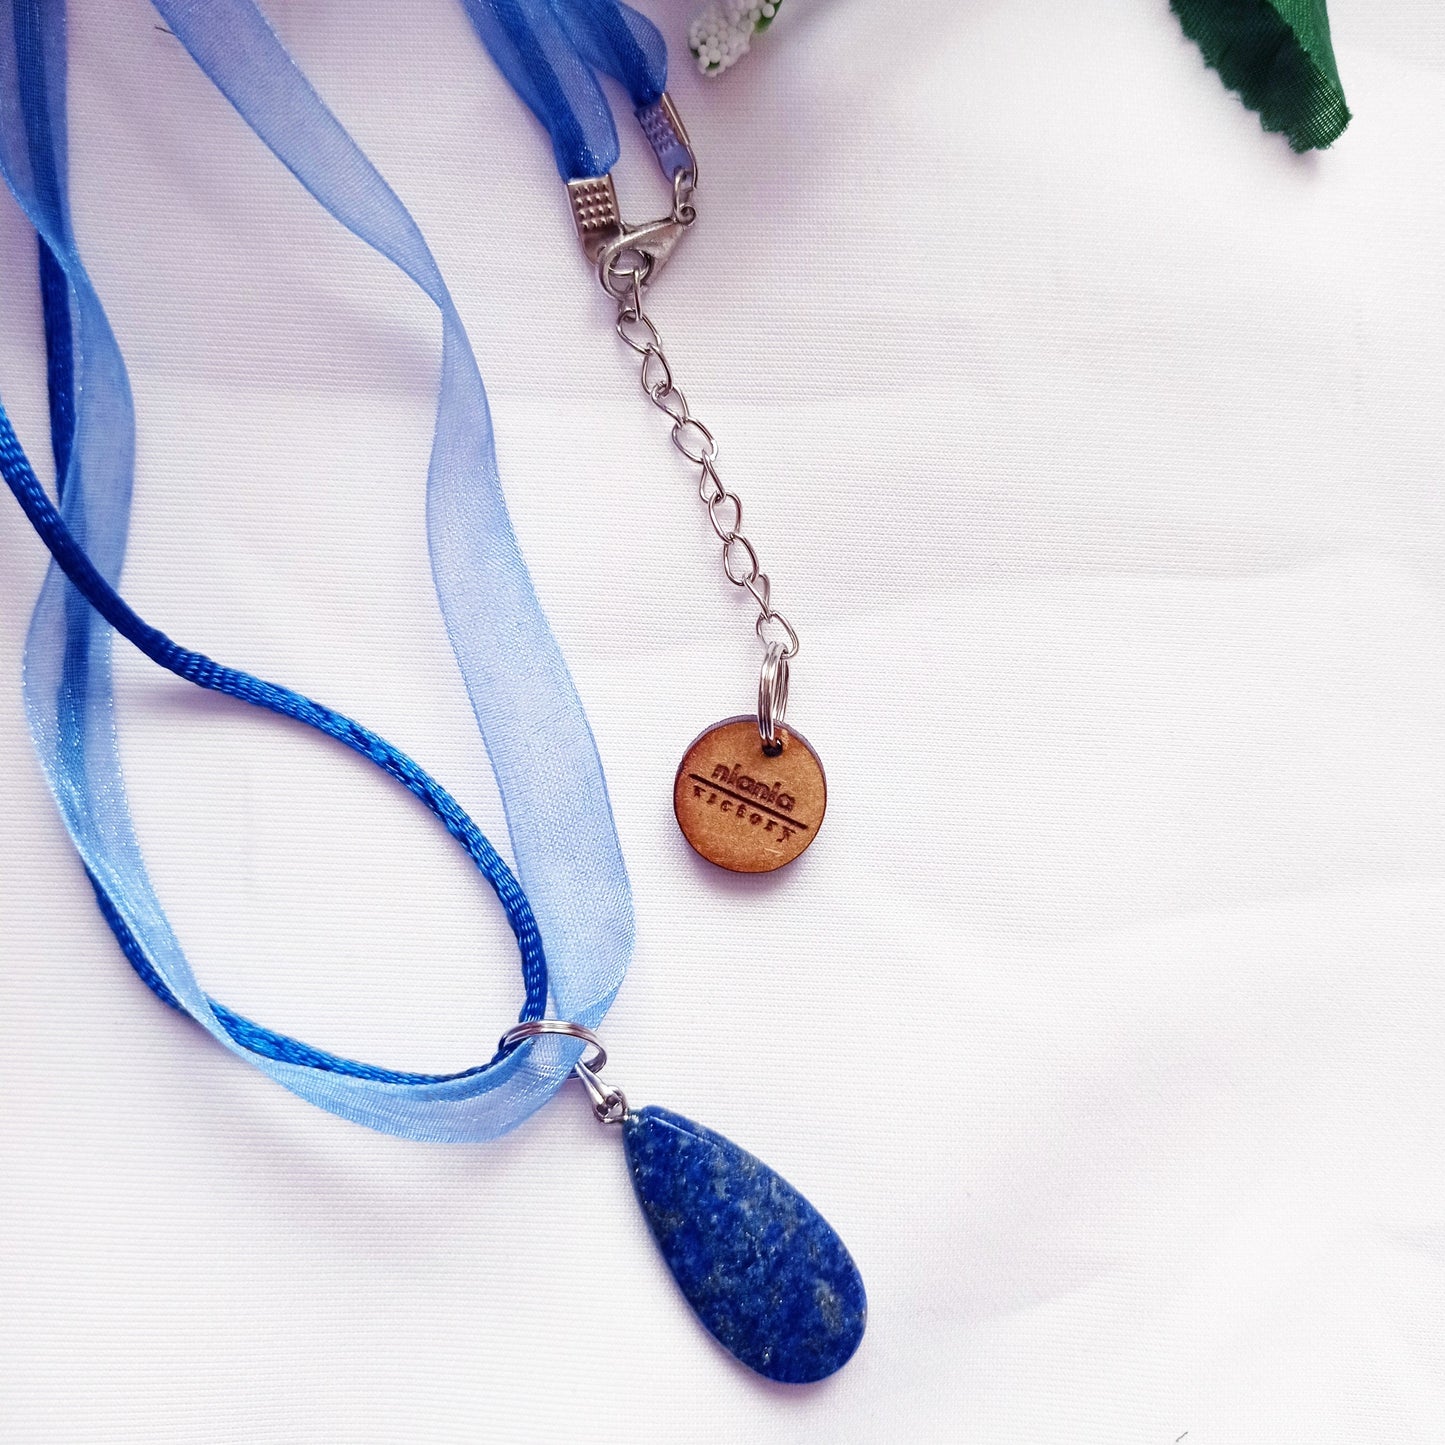 Lapis Lazuli Necklace, Blue Ribbon Necklace, Gemstone Necklace, Lapis Lazuli Pendant | by nlanlaVictory-5